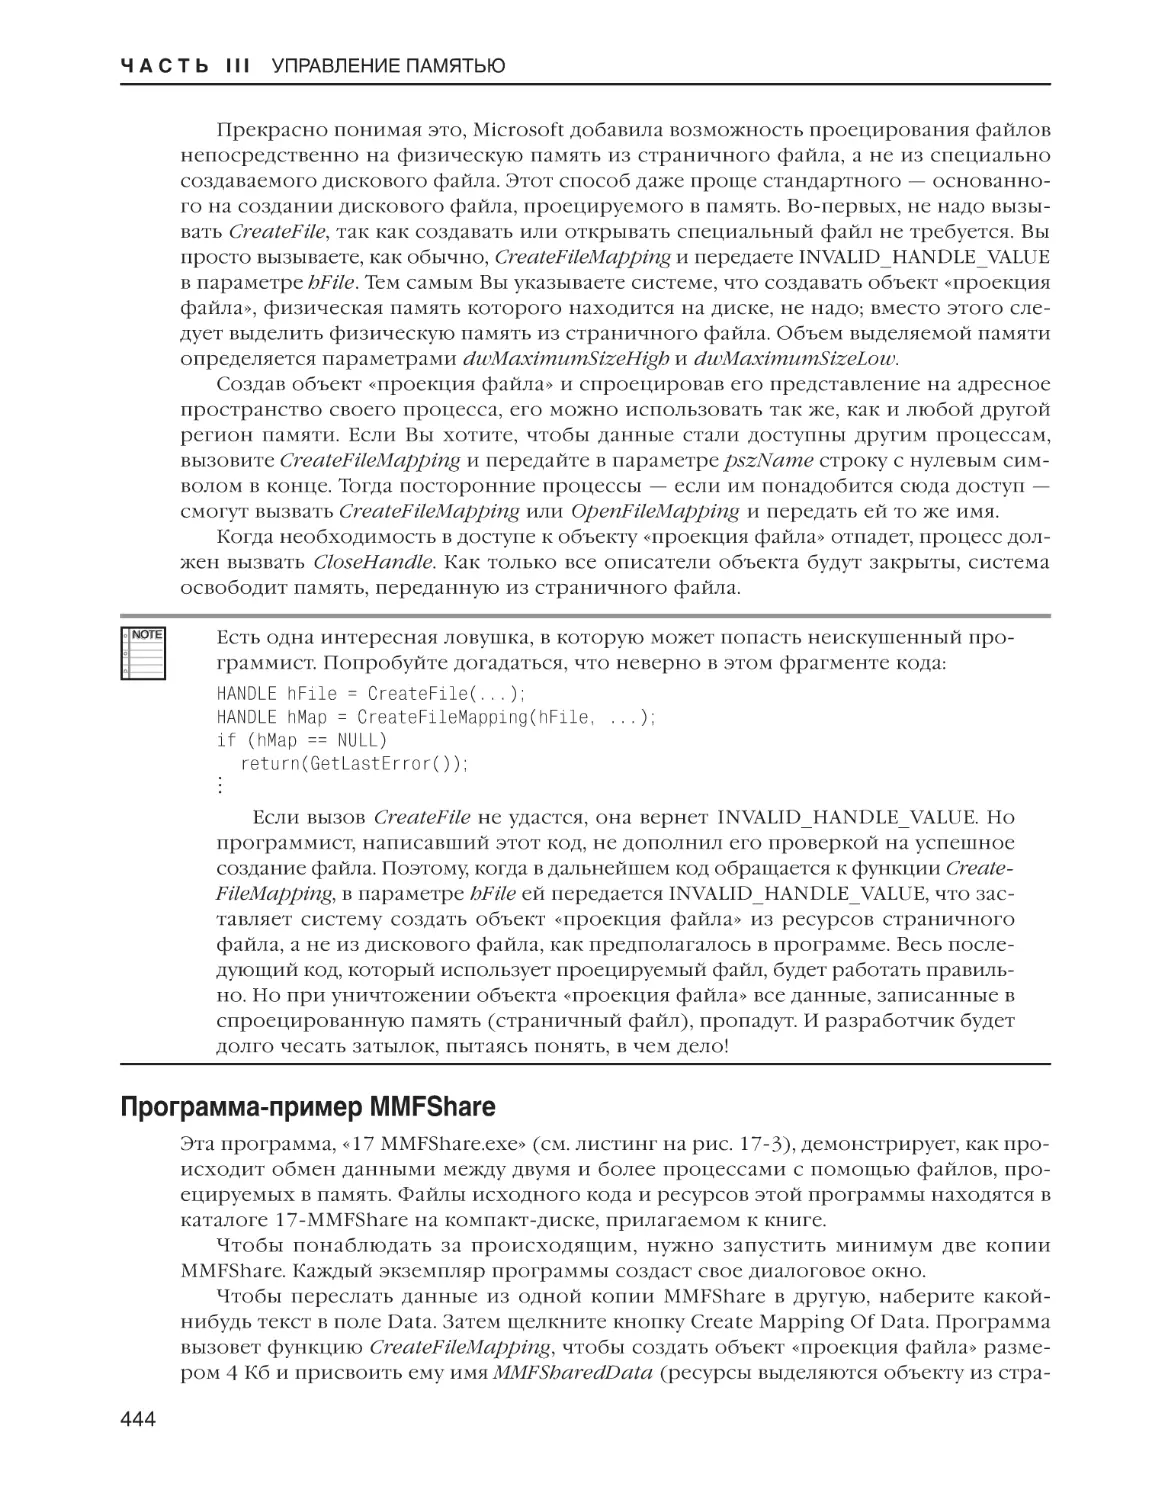 Программа-пример MMFShare